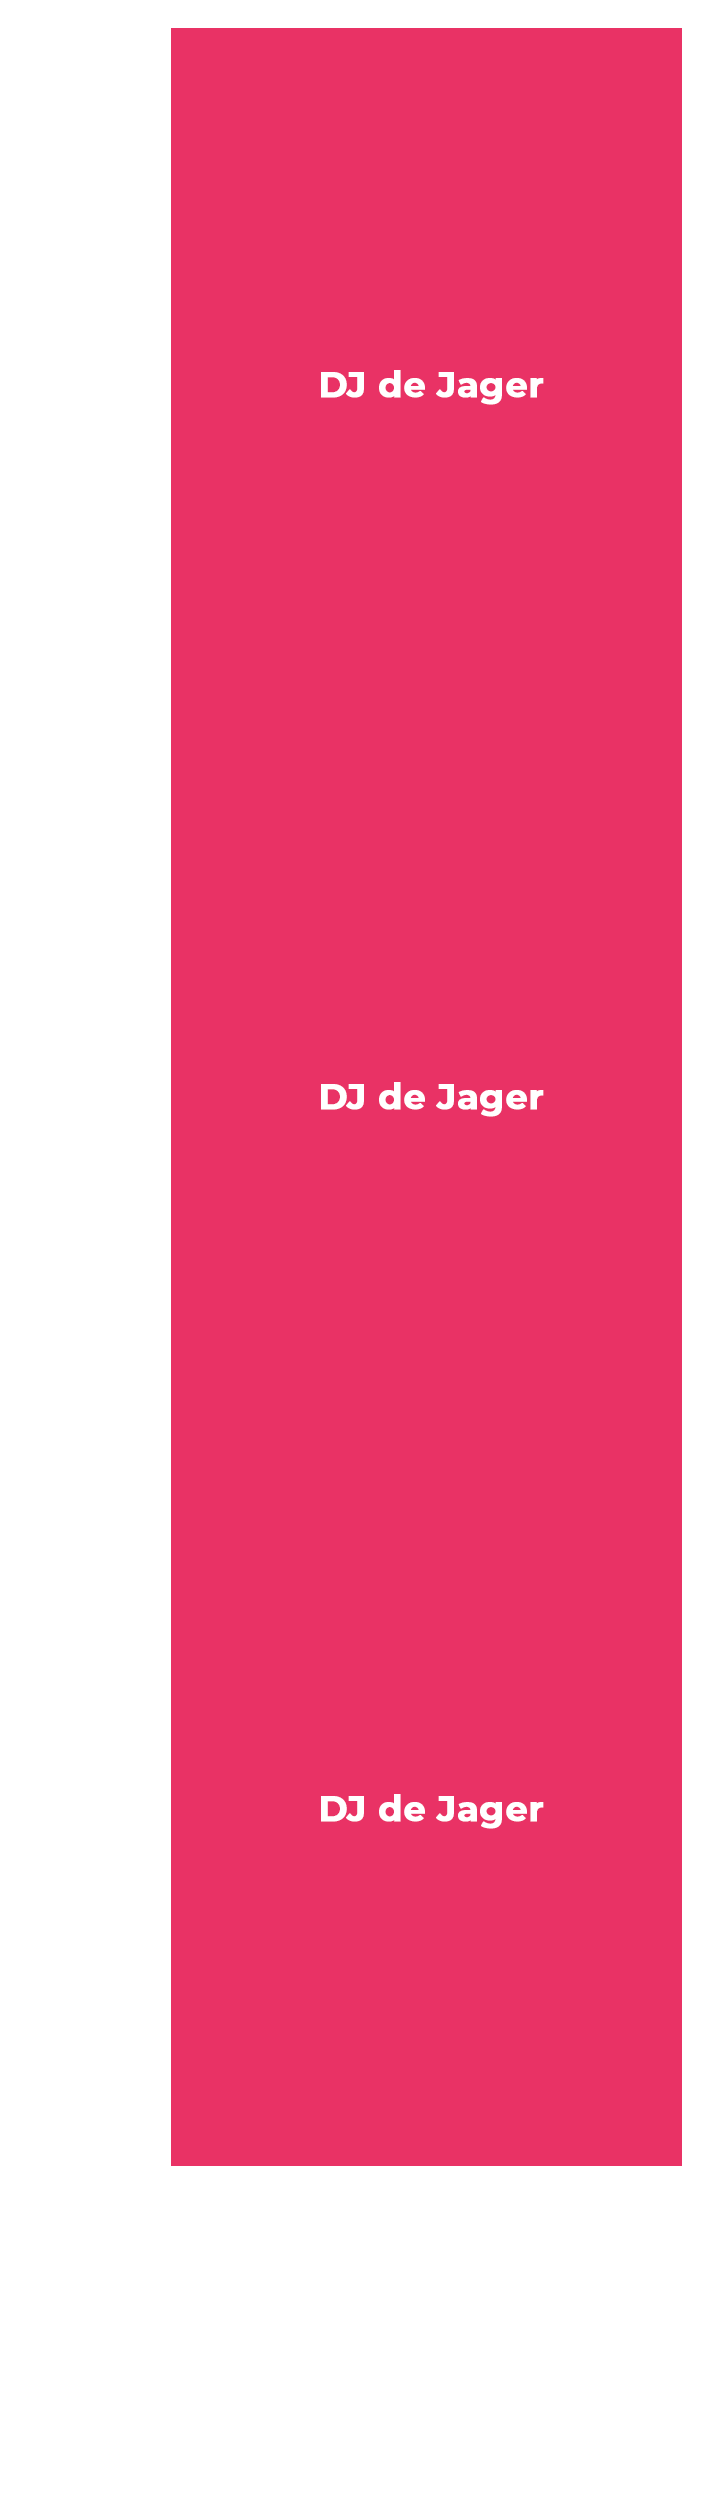 https://nijmeegsebierfeesten.nl/wp-content/uploads/2020/01/2020-muziekprogramma-zaterdag-bovenzaal-1.png